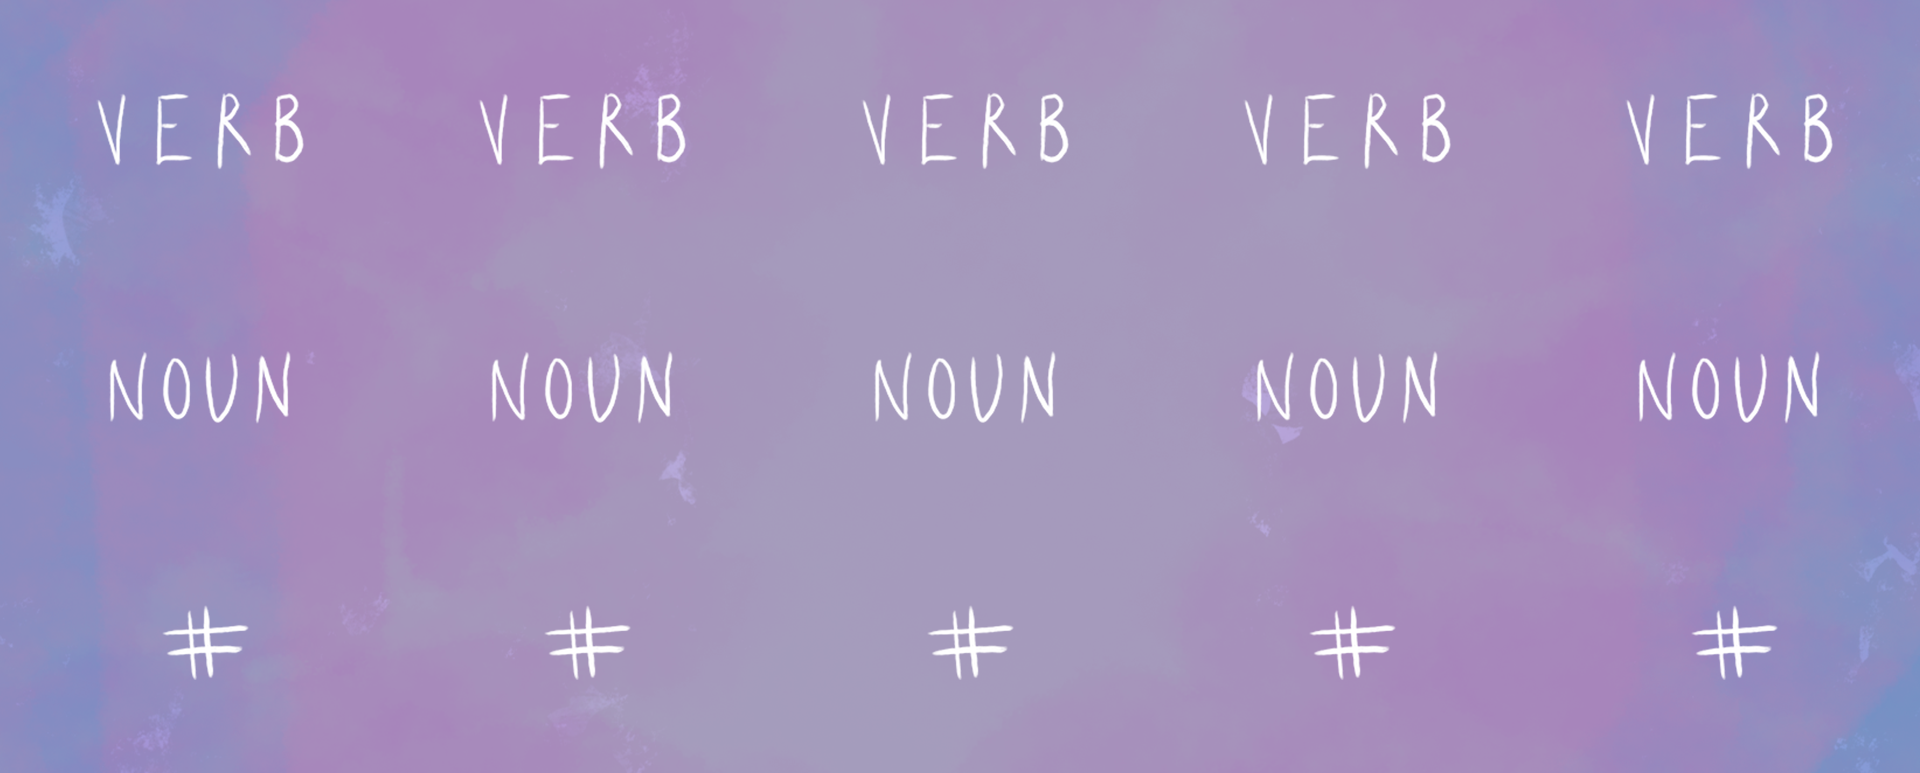 Verby Noun Score